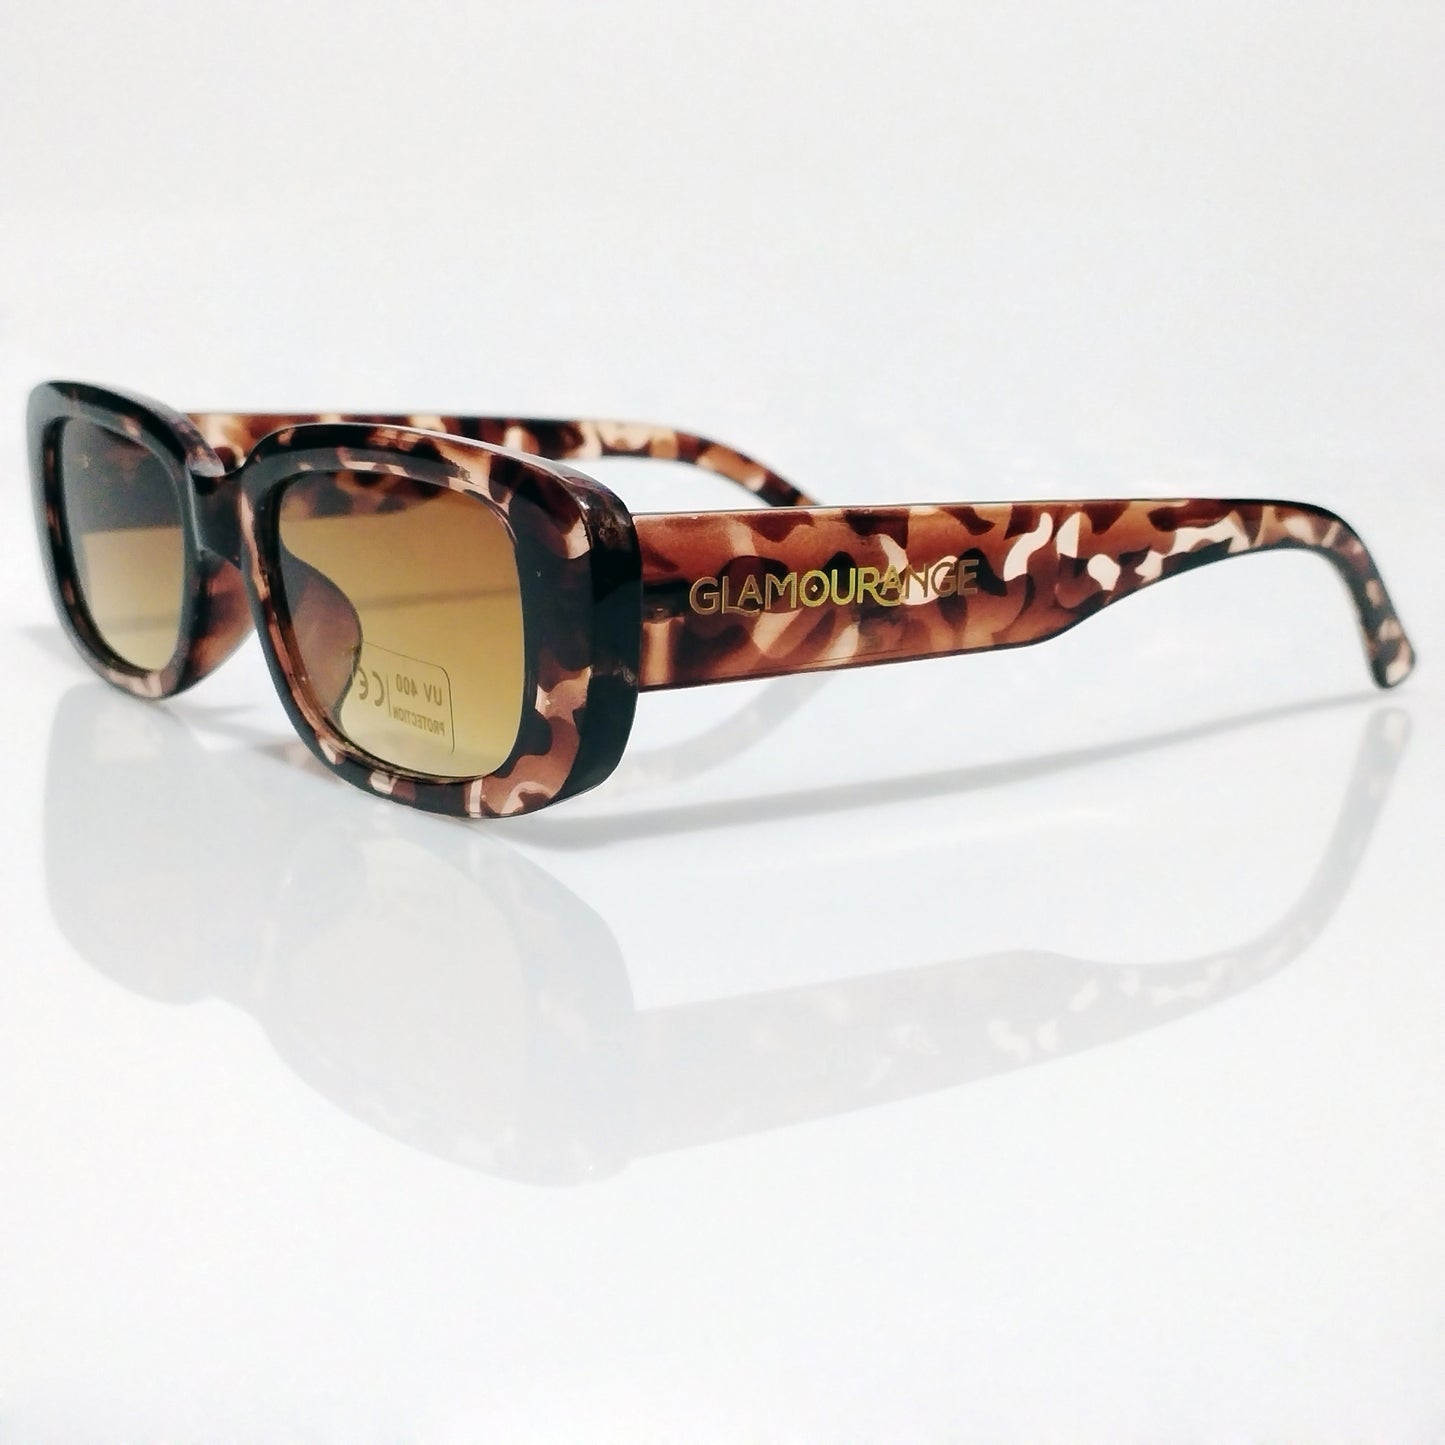 Glamourange Sunglasses Model GR-1007 C7